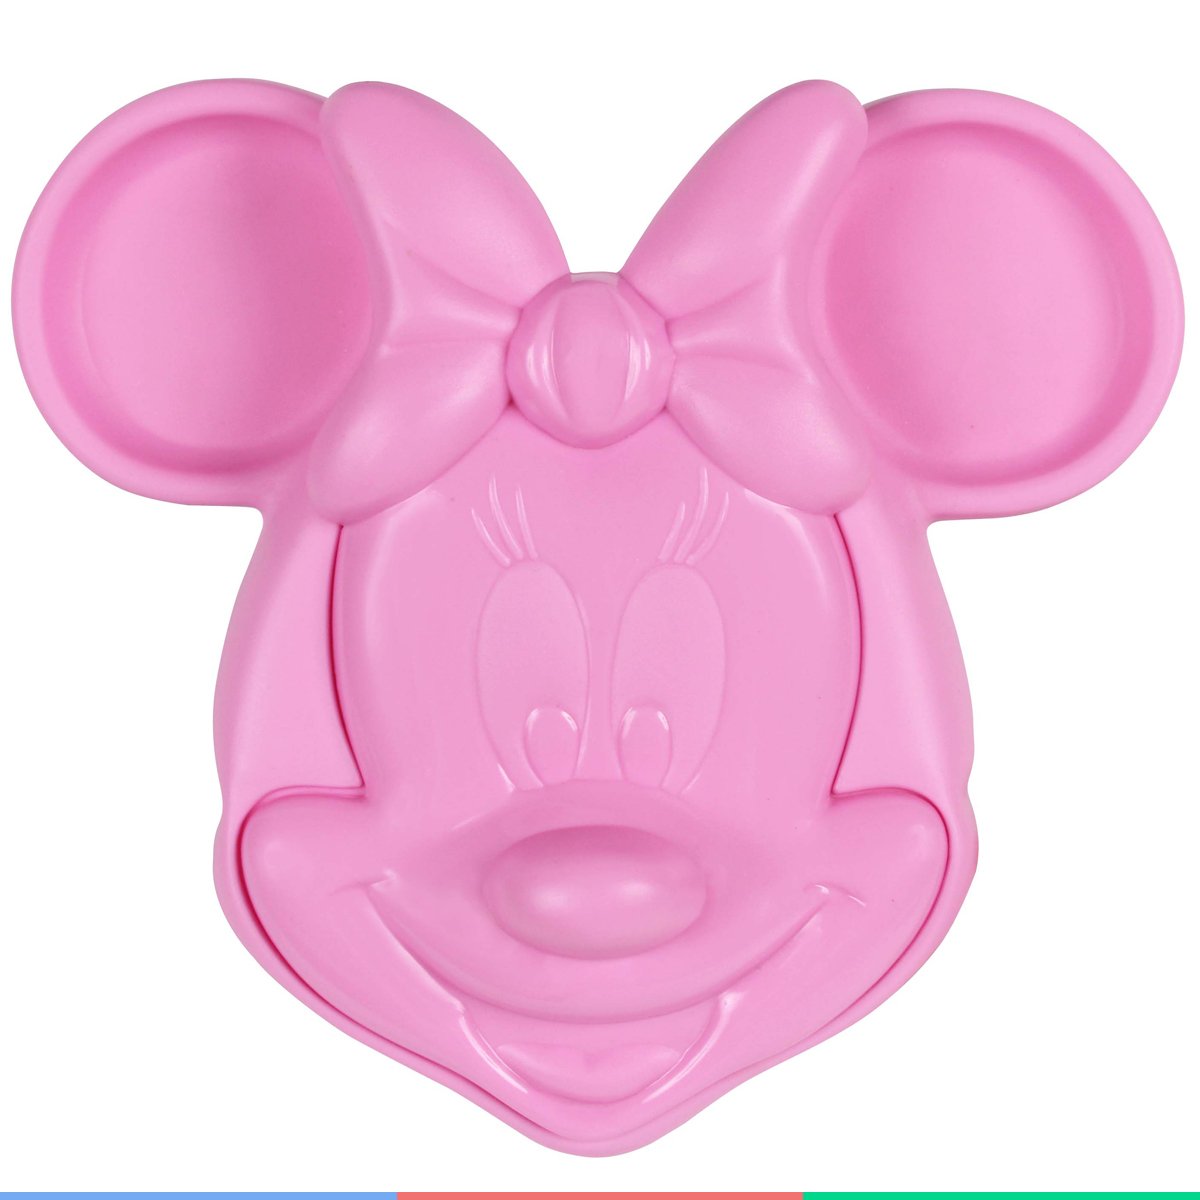 Prato Infantil Alimentação do Bebê com Tampa e Divisórias Formato Minnie Mouse 3d Rosa Disney - 5